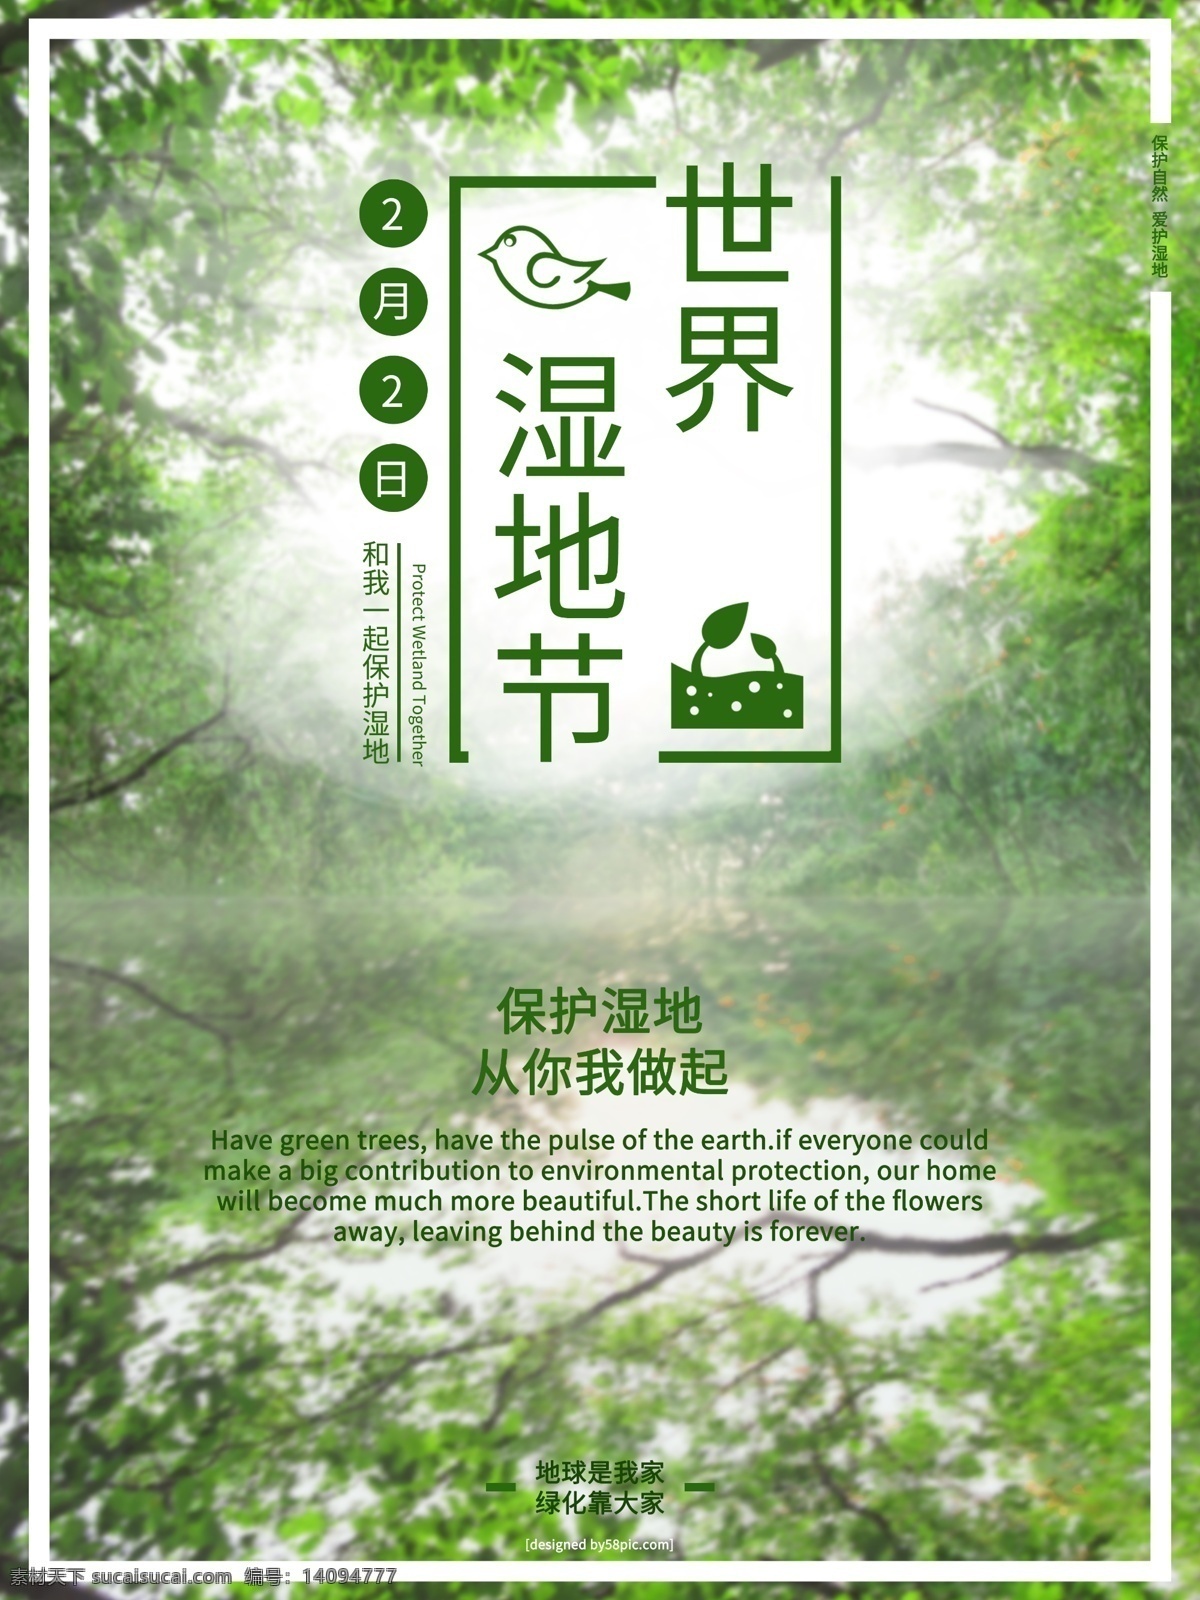 2018 世界 湿地 节 保护 海报 模板 保护湿地 环保 环境 节日 绿化 绿色 清新 湿地节